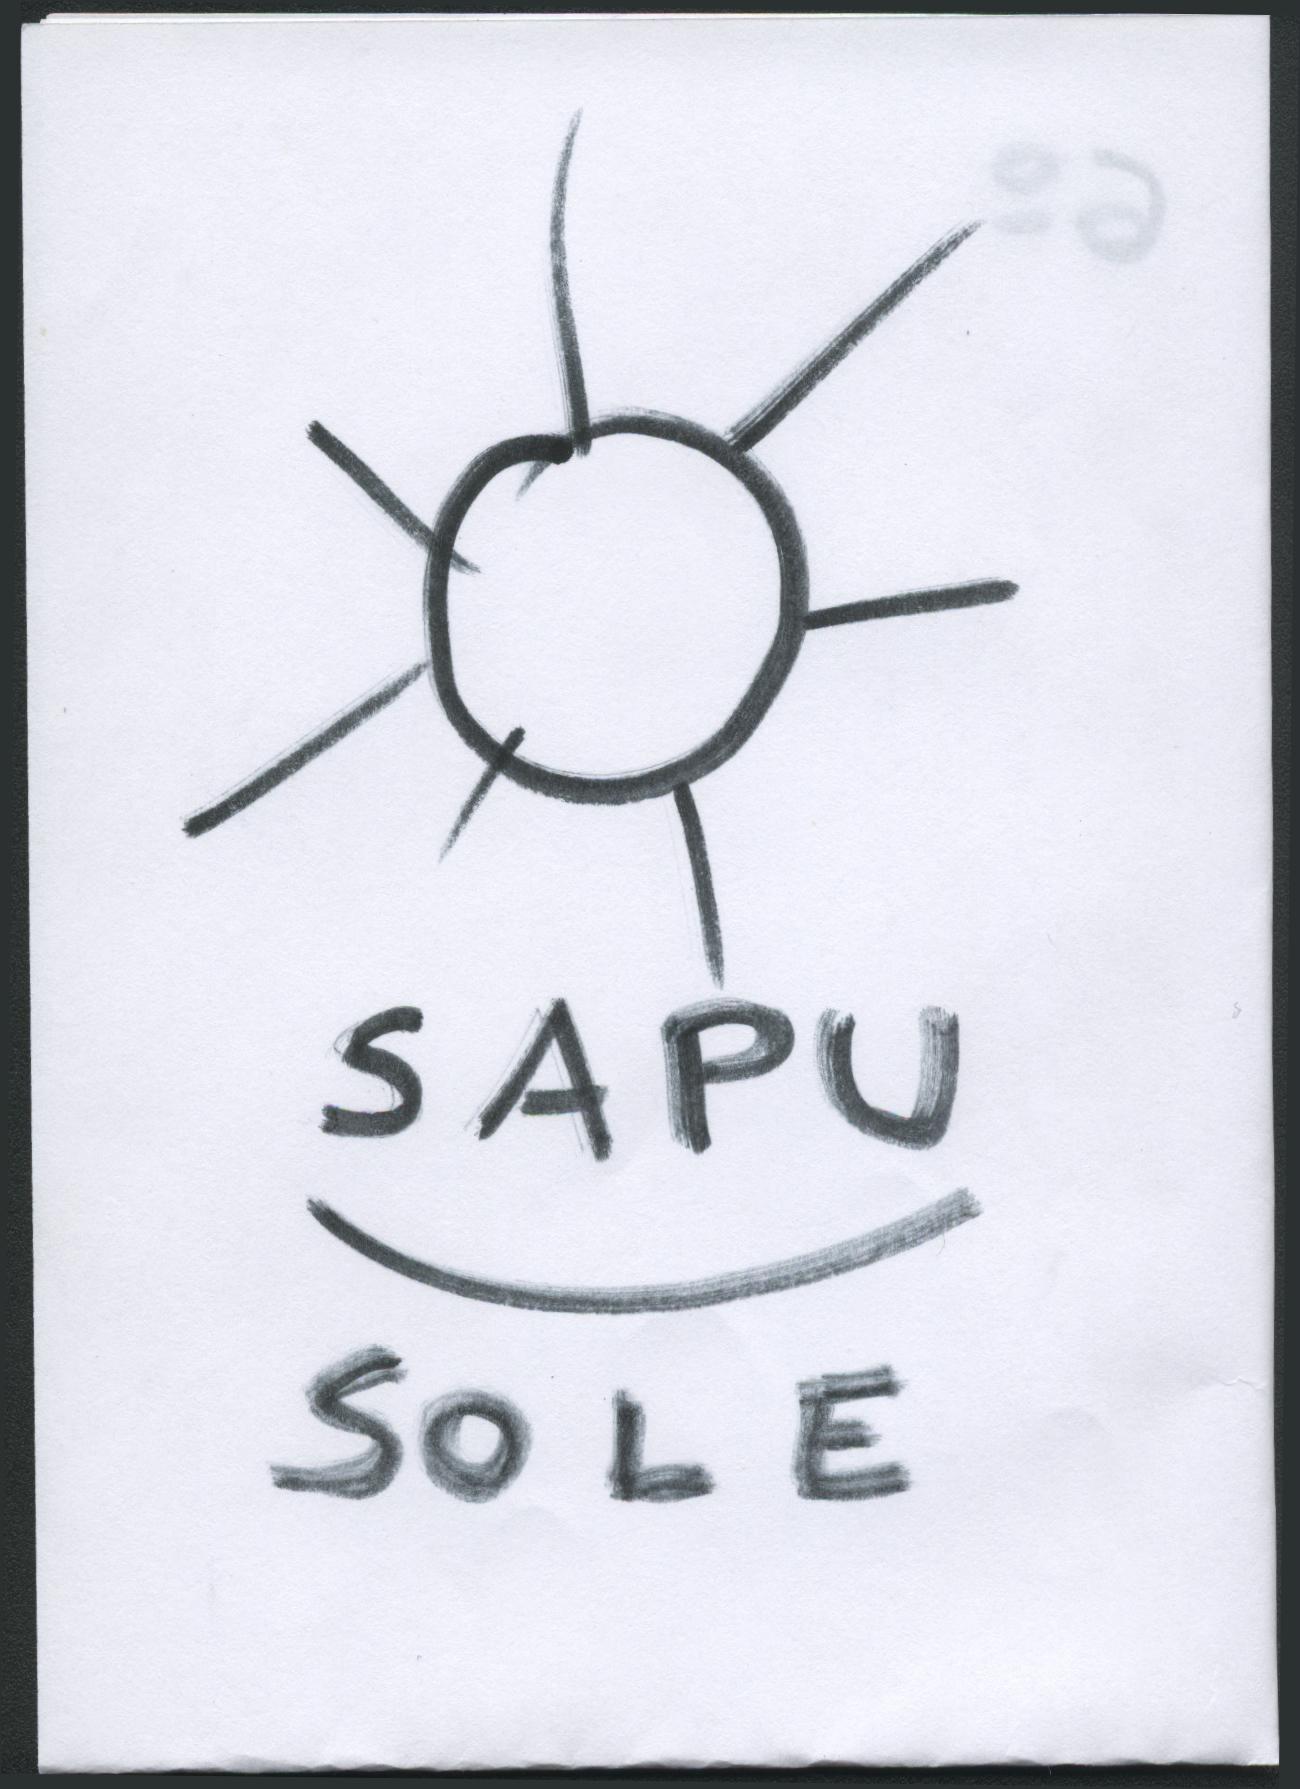 scrittura spontanea della parola "sole": ogni segno rappresenta un suono